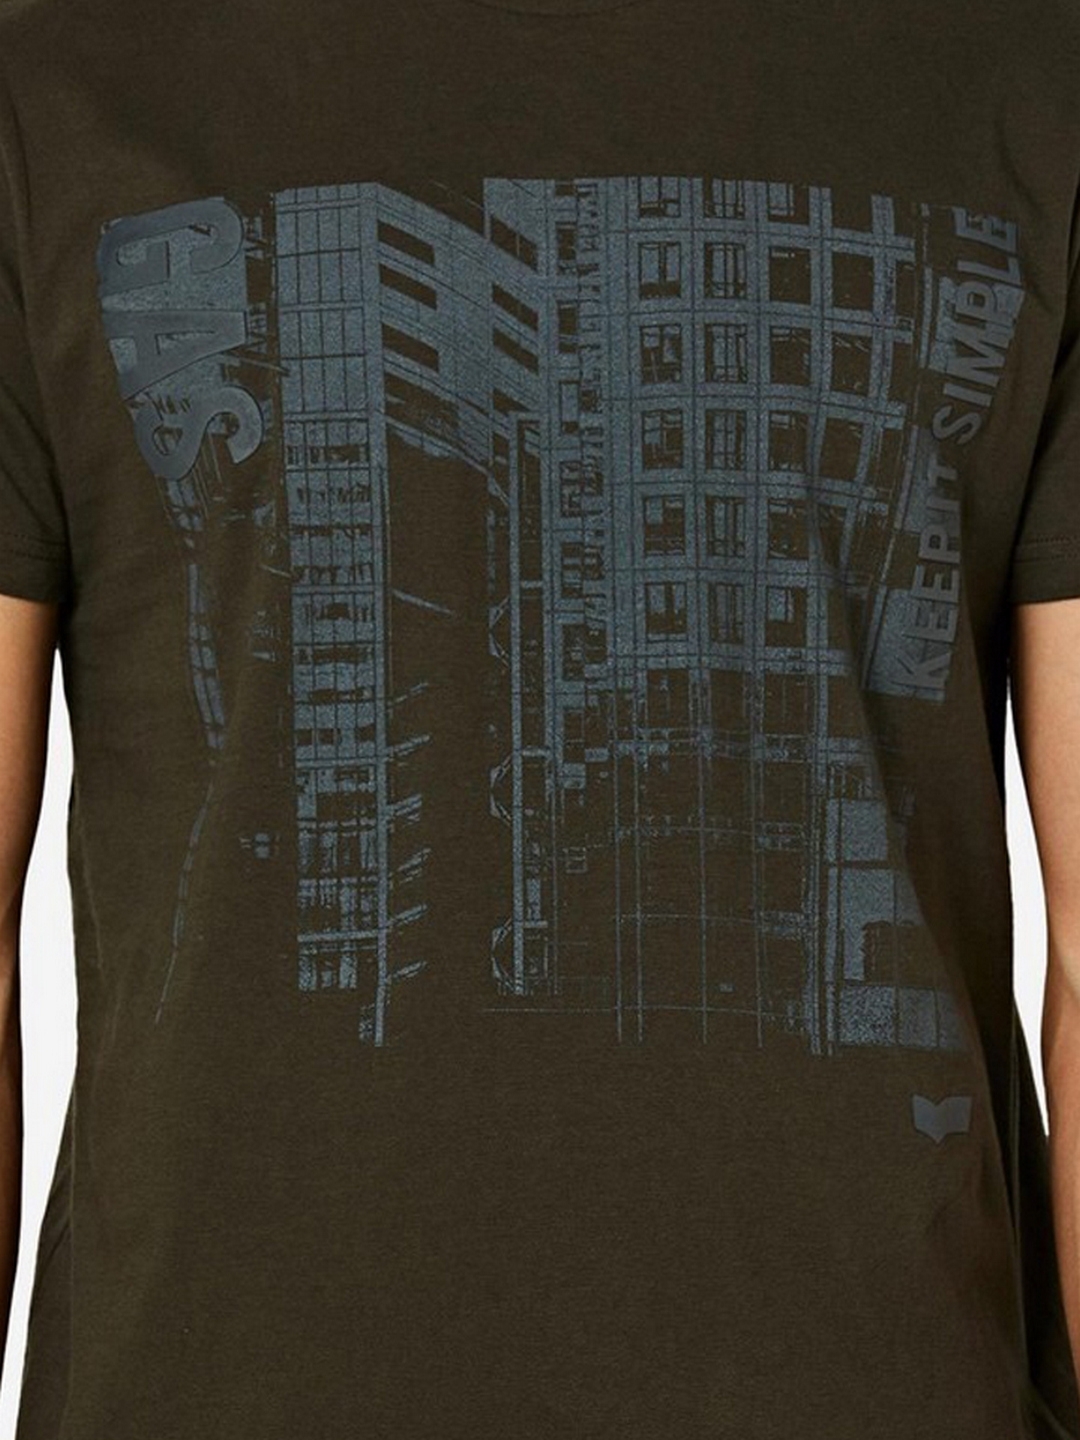 Scuba Slim Fit Crew-Neck T-shirt